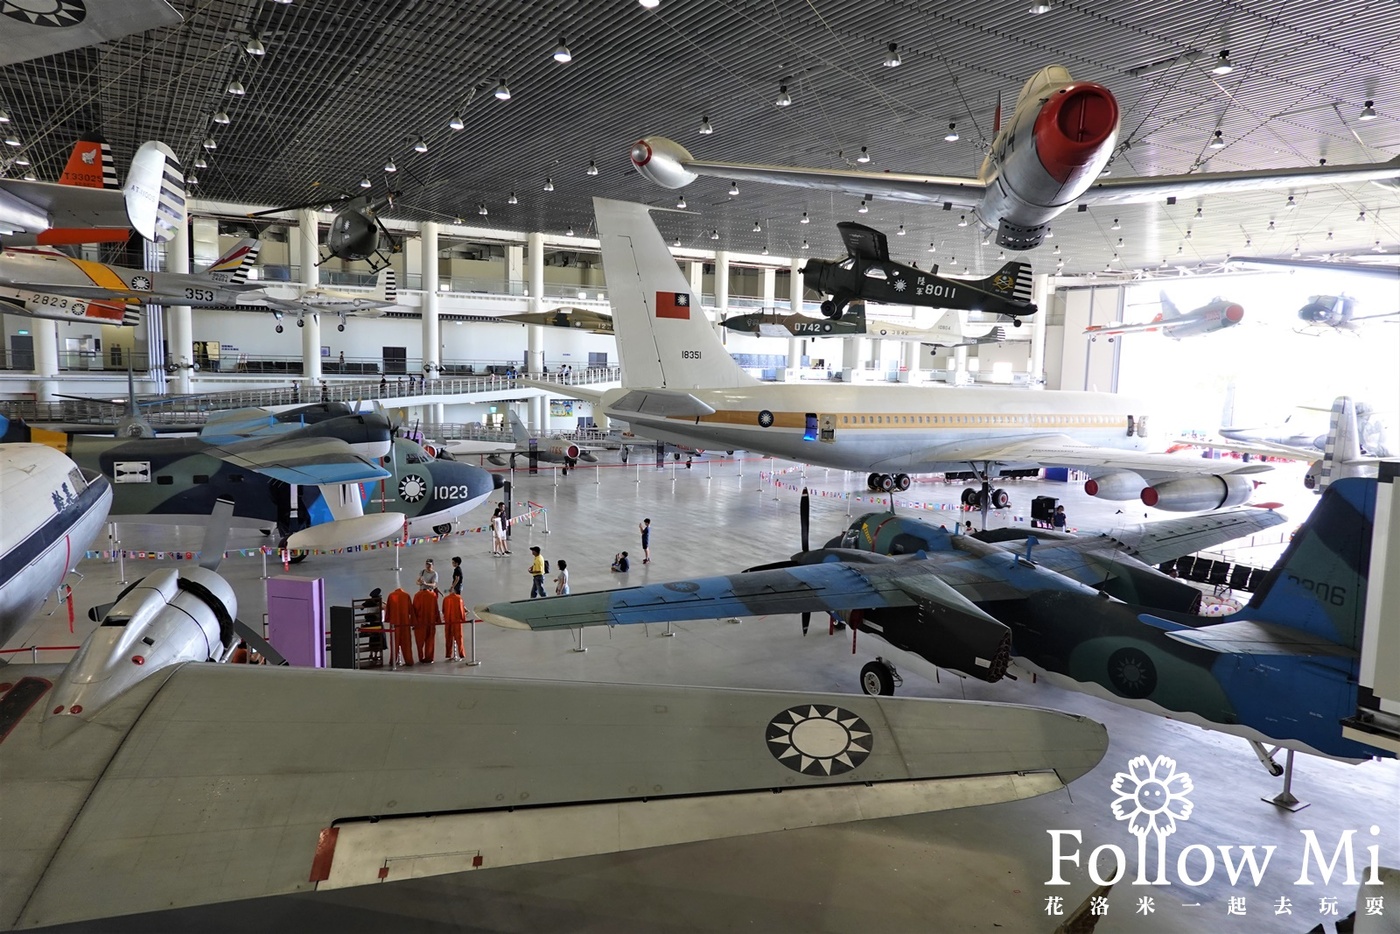 博物館,岡山區,戰鬥機展示,航空教育展示館,親子景點,高雄景點